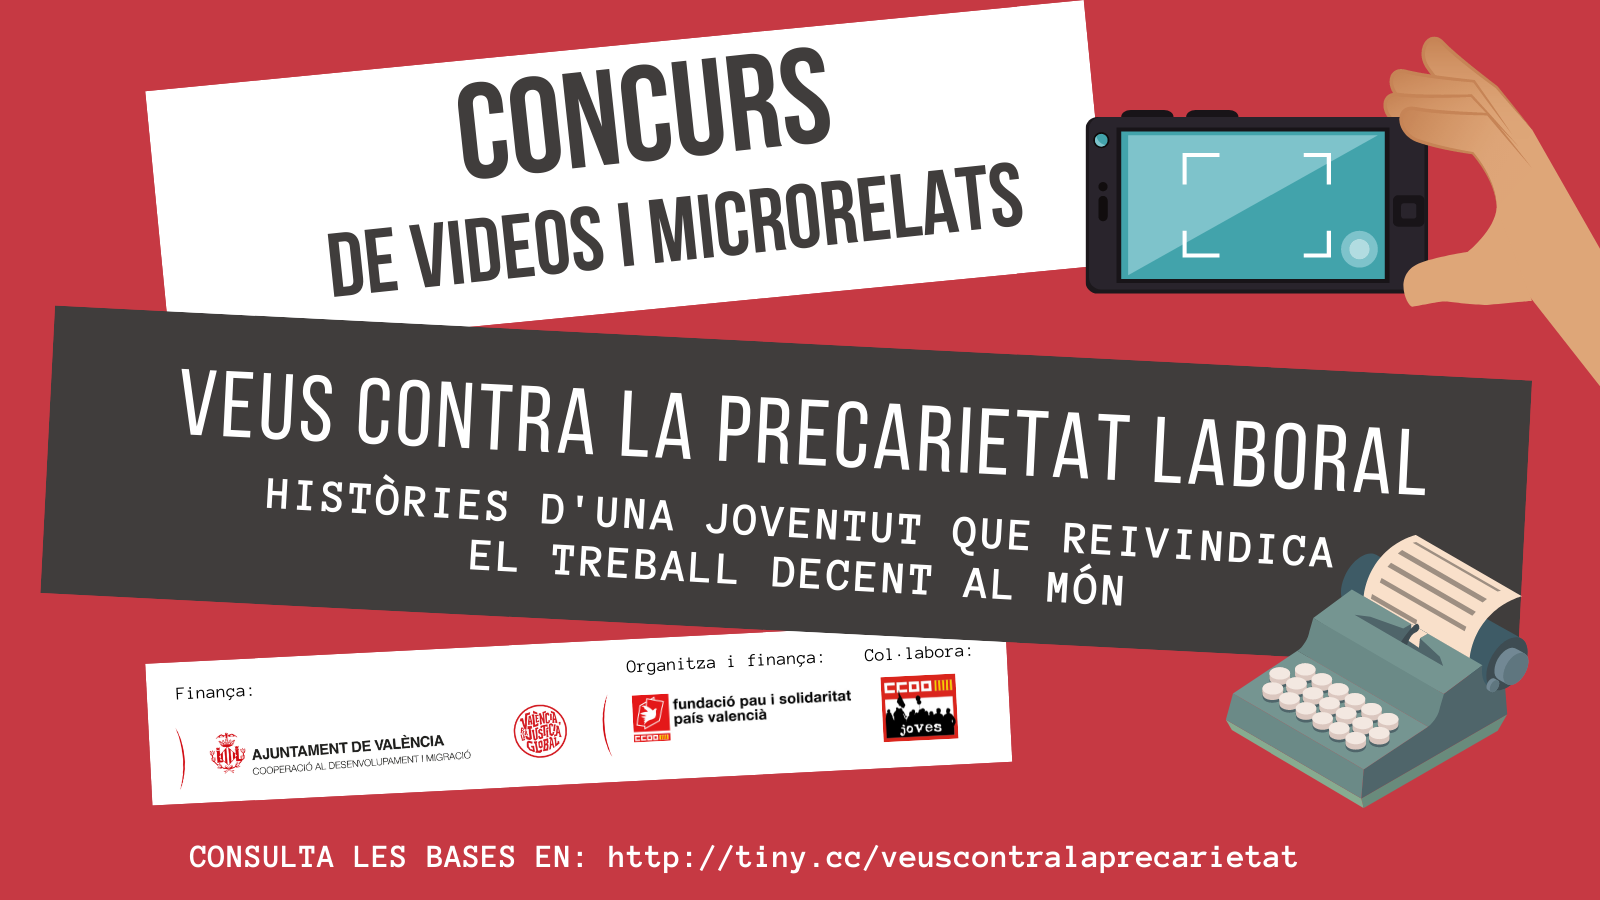  1r Concurs de vídeos i microrelats Veus contra la precarietat laboral de la ciutat de València